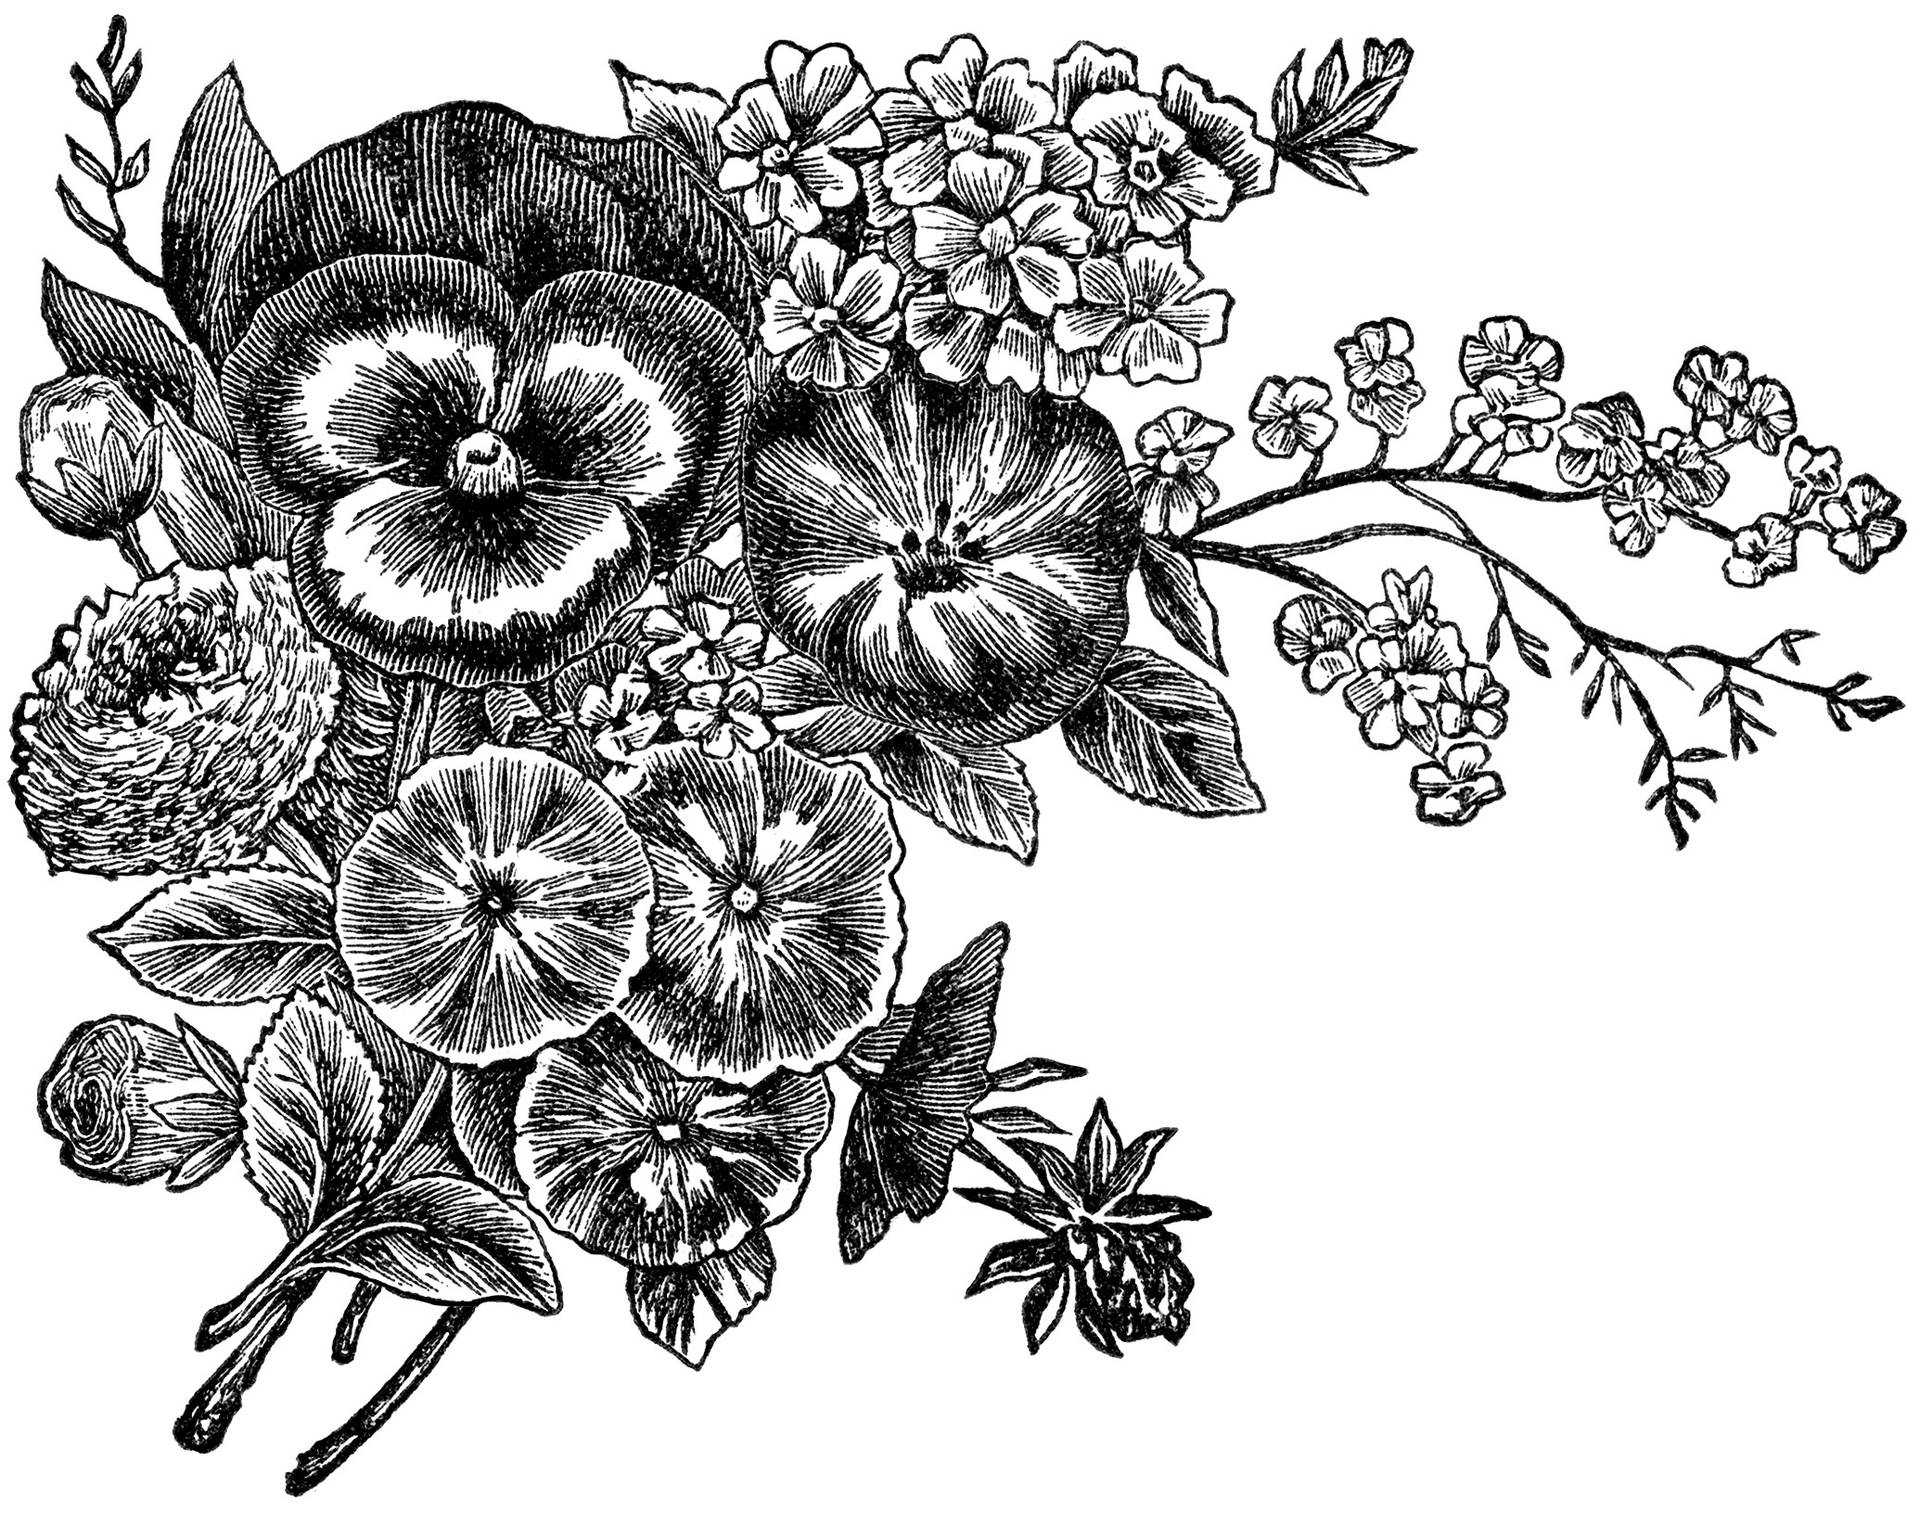 Striking Black And White Flower Illustration